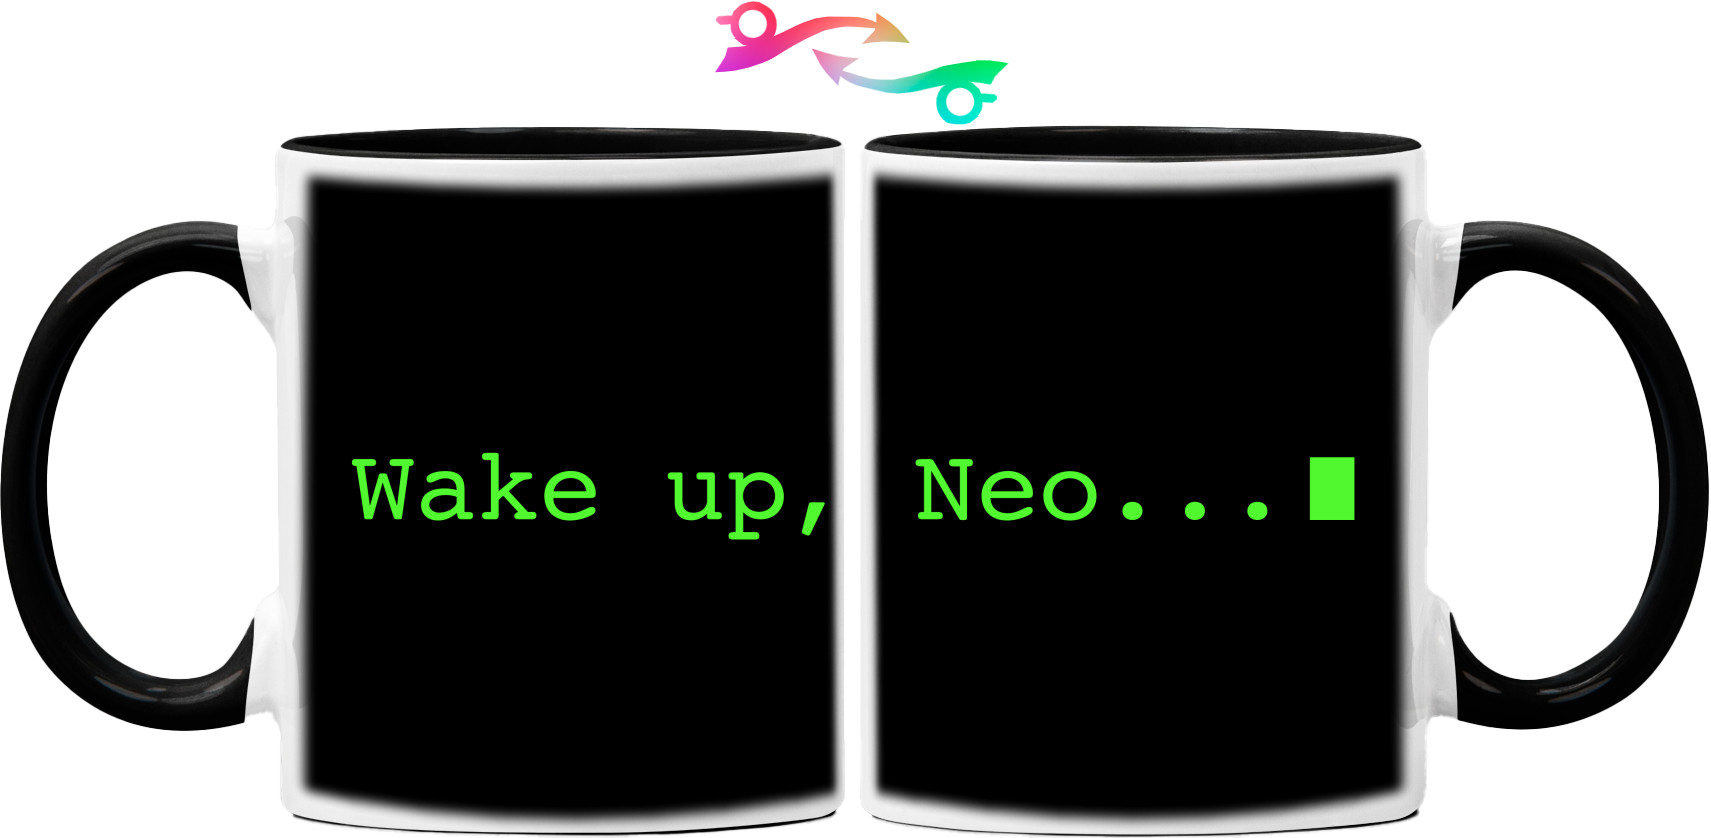 Wake Up Neo